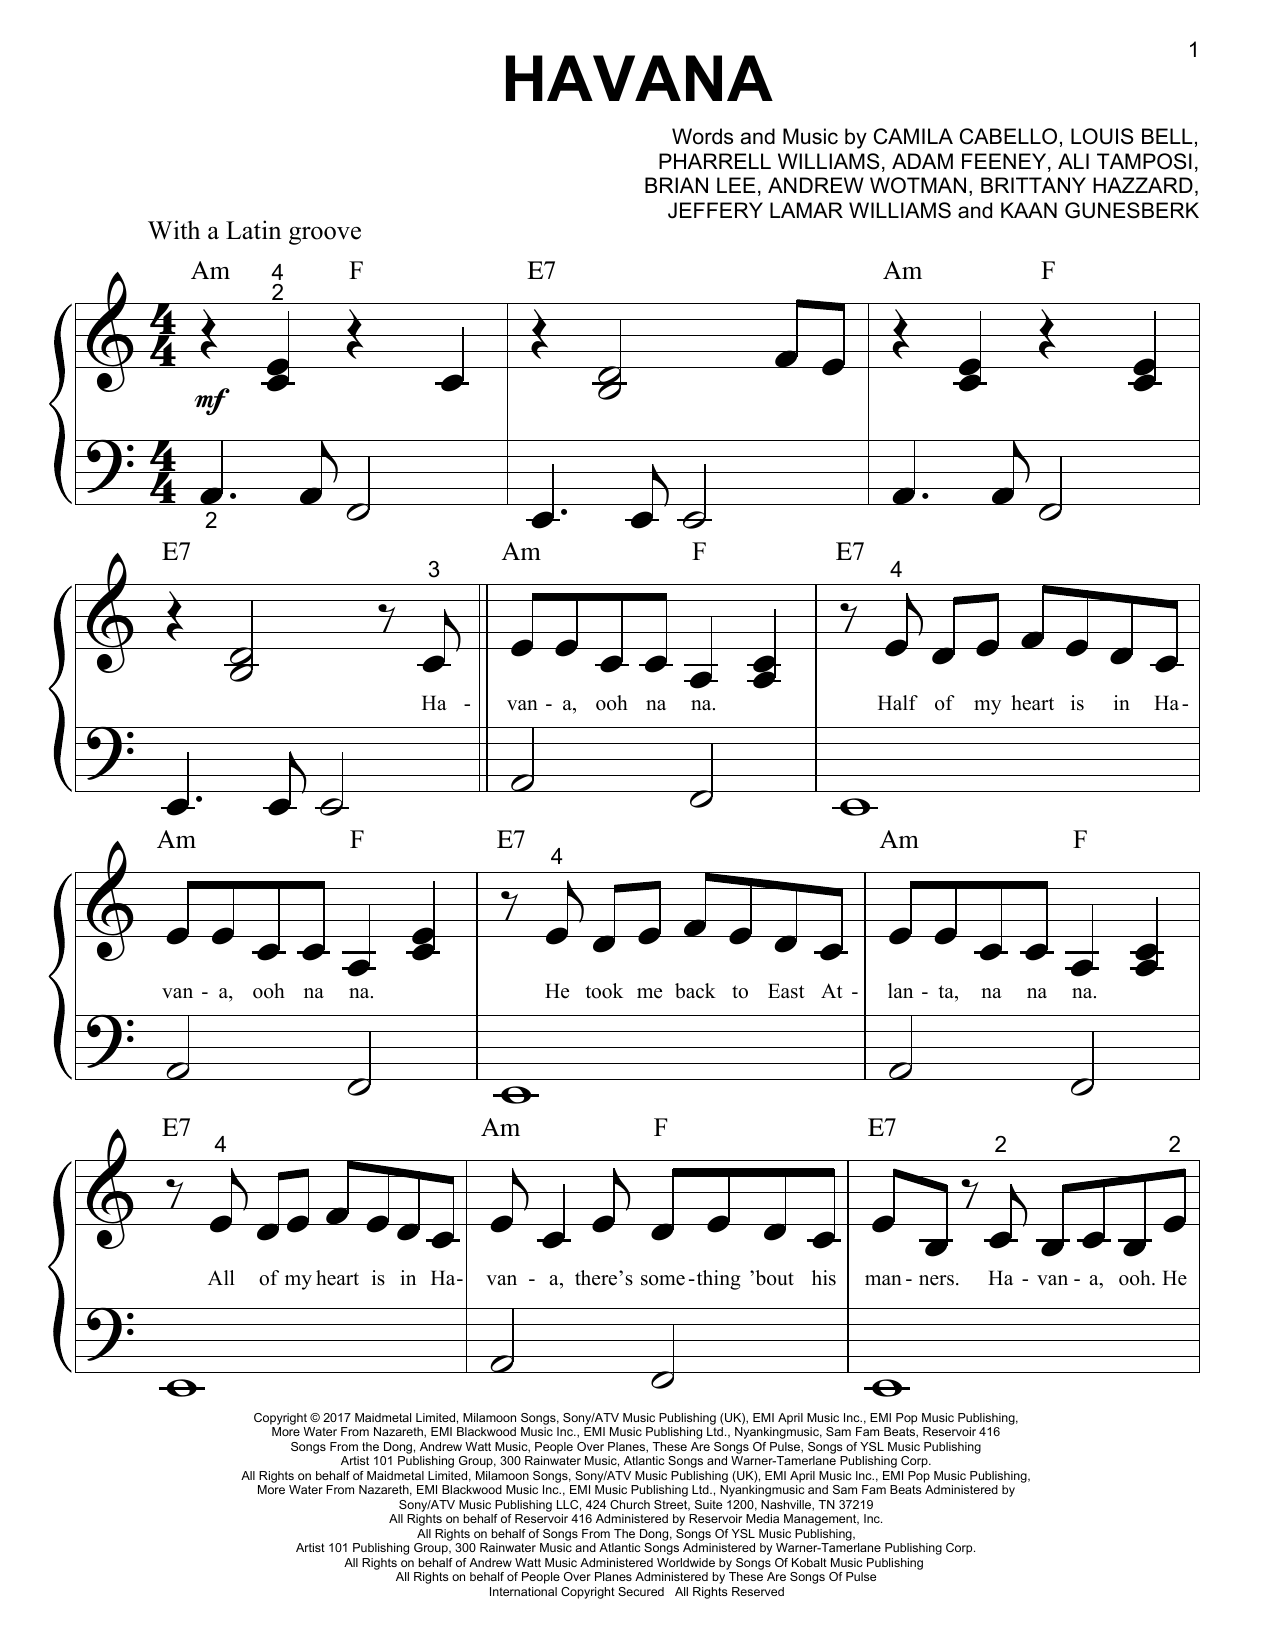 Havana Piano - havana song code in roblox havana roblox piano music